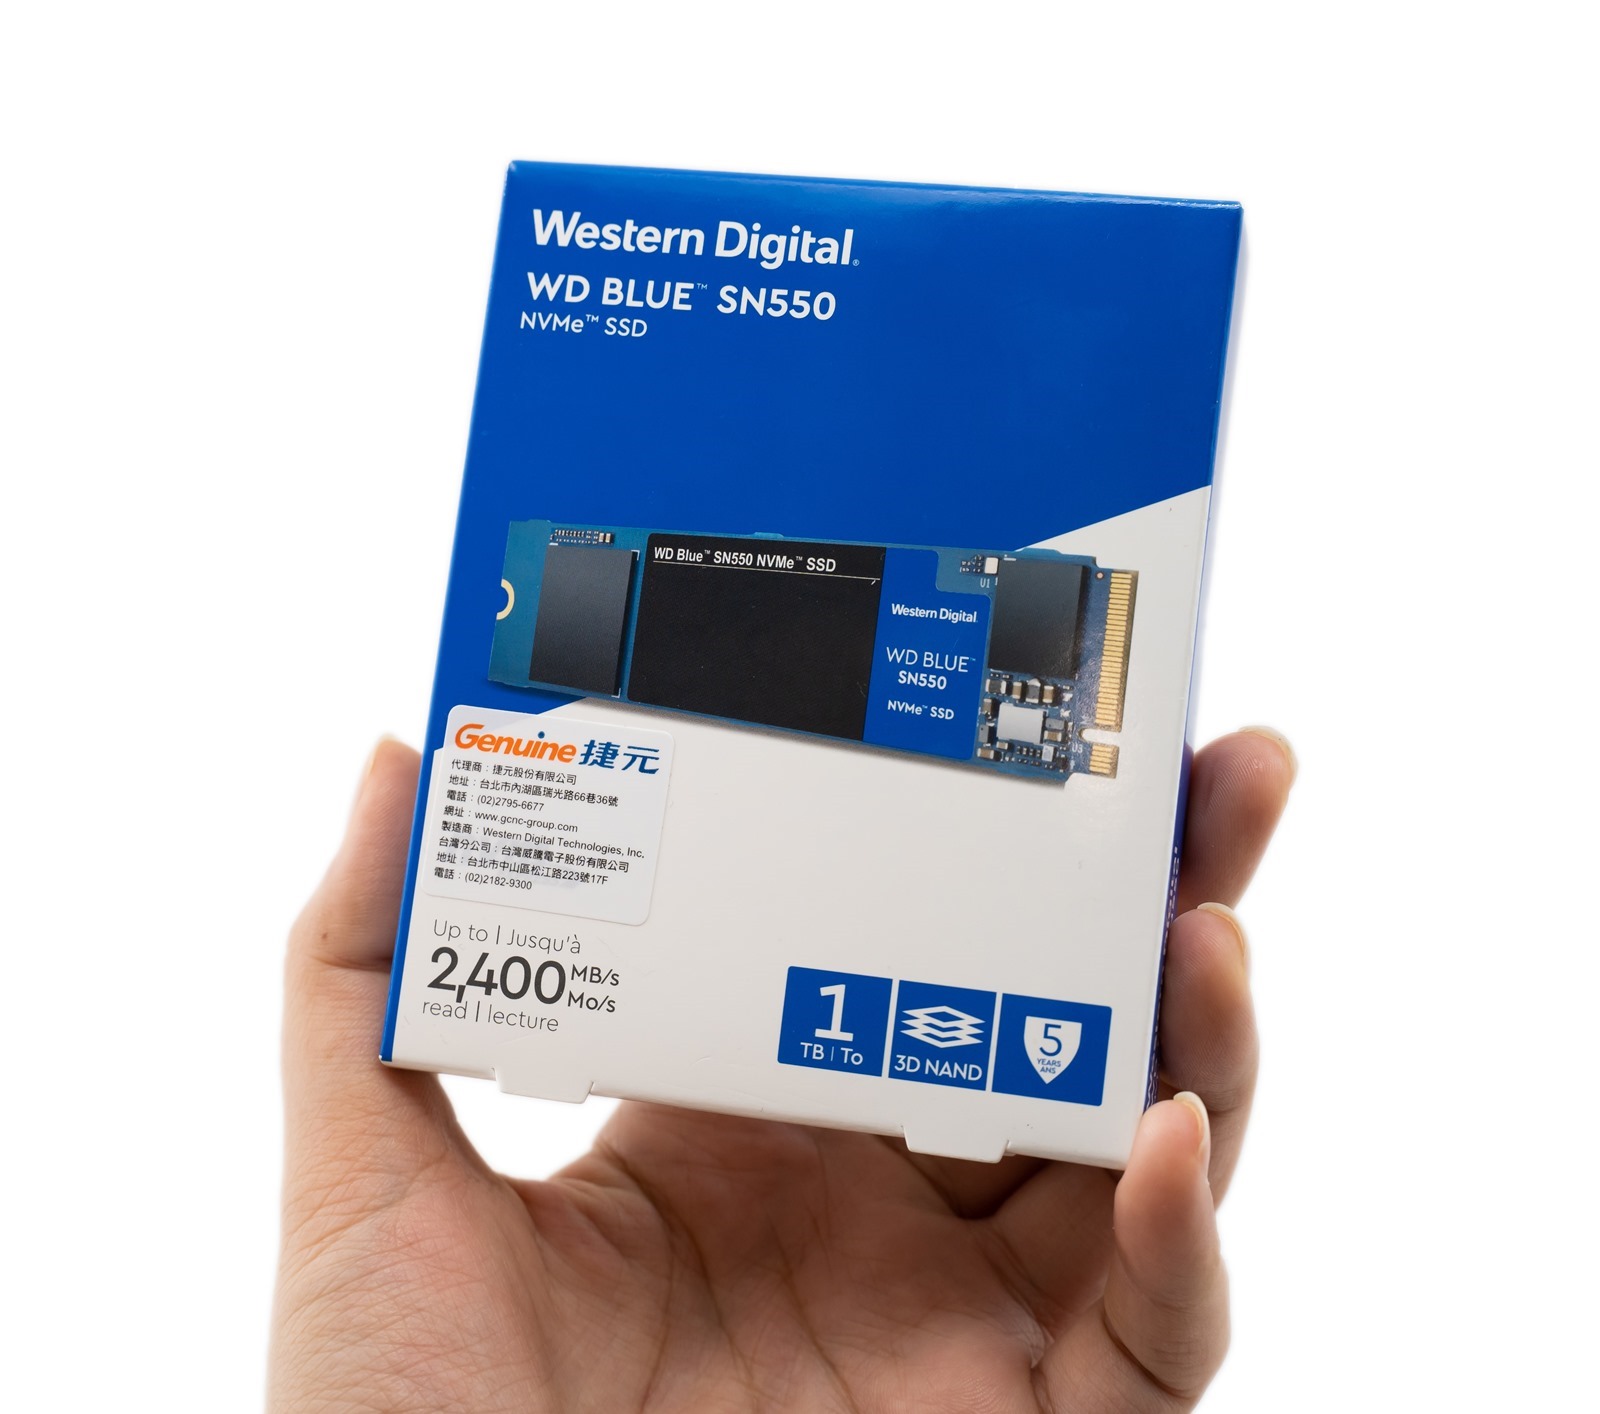 平價高性能WD Blue SN550 NVMe SSD 電腦裝機升級首選@3C 達人廖阿輝